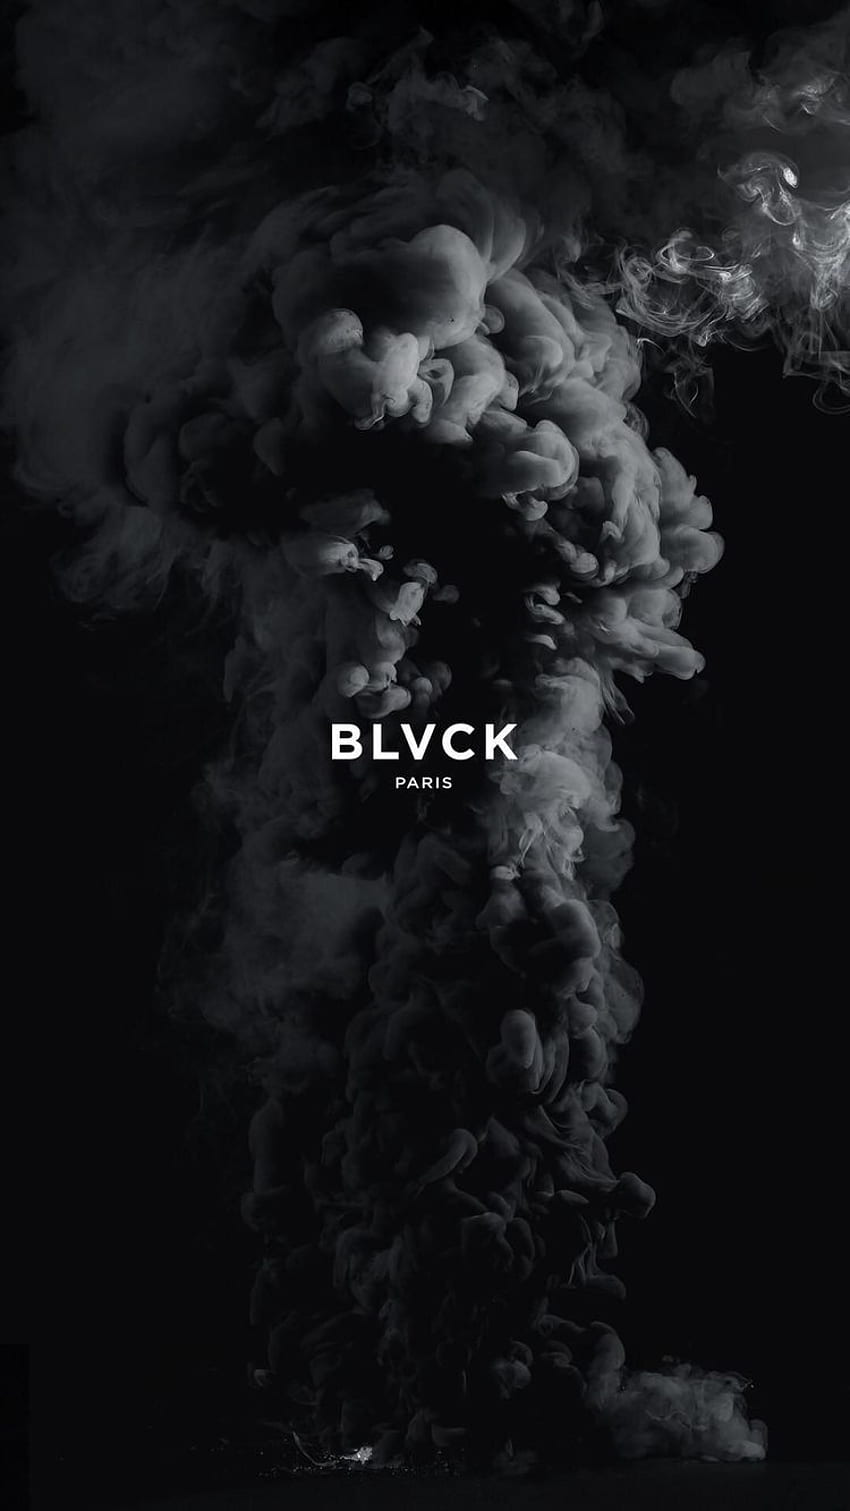 BLVCK PARIS 아이디어. blvck, 파리, 블랙 HD 전화 배경 화면